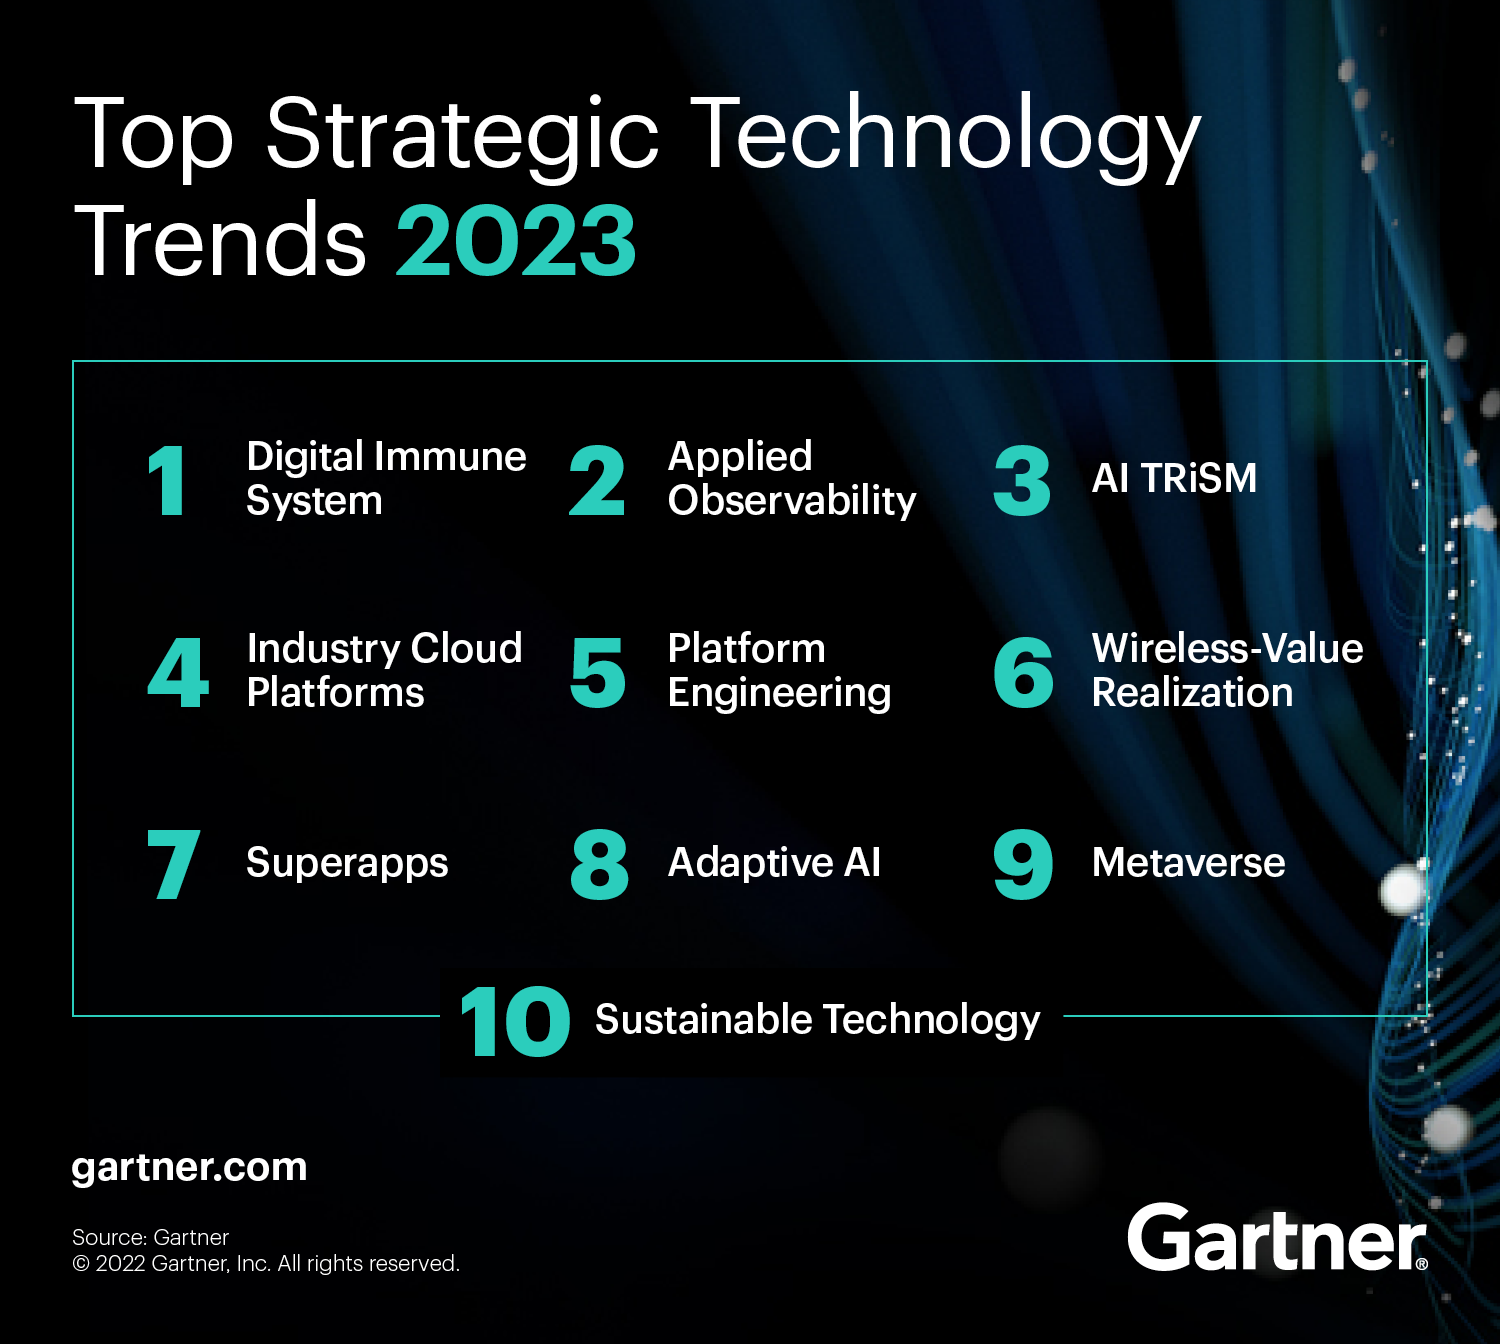 https://emt.gartnerweb.com/ngw/globalassets/en/articles/images/gartner-top-10-strategic-technology-trends-2023.png